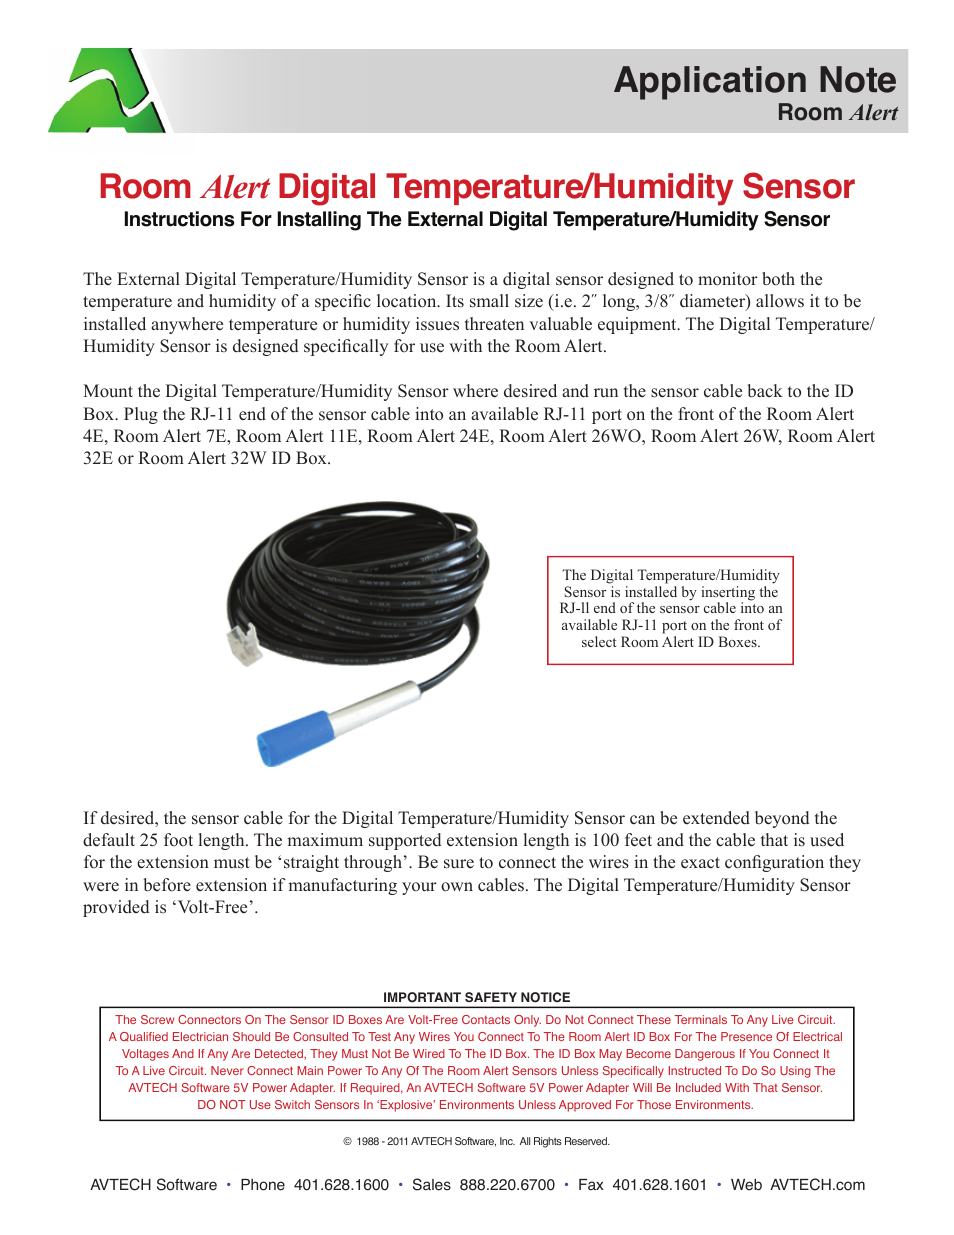 Digital Temp & Humidity Sensor (RMA-DTH-SEN)